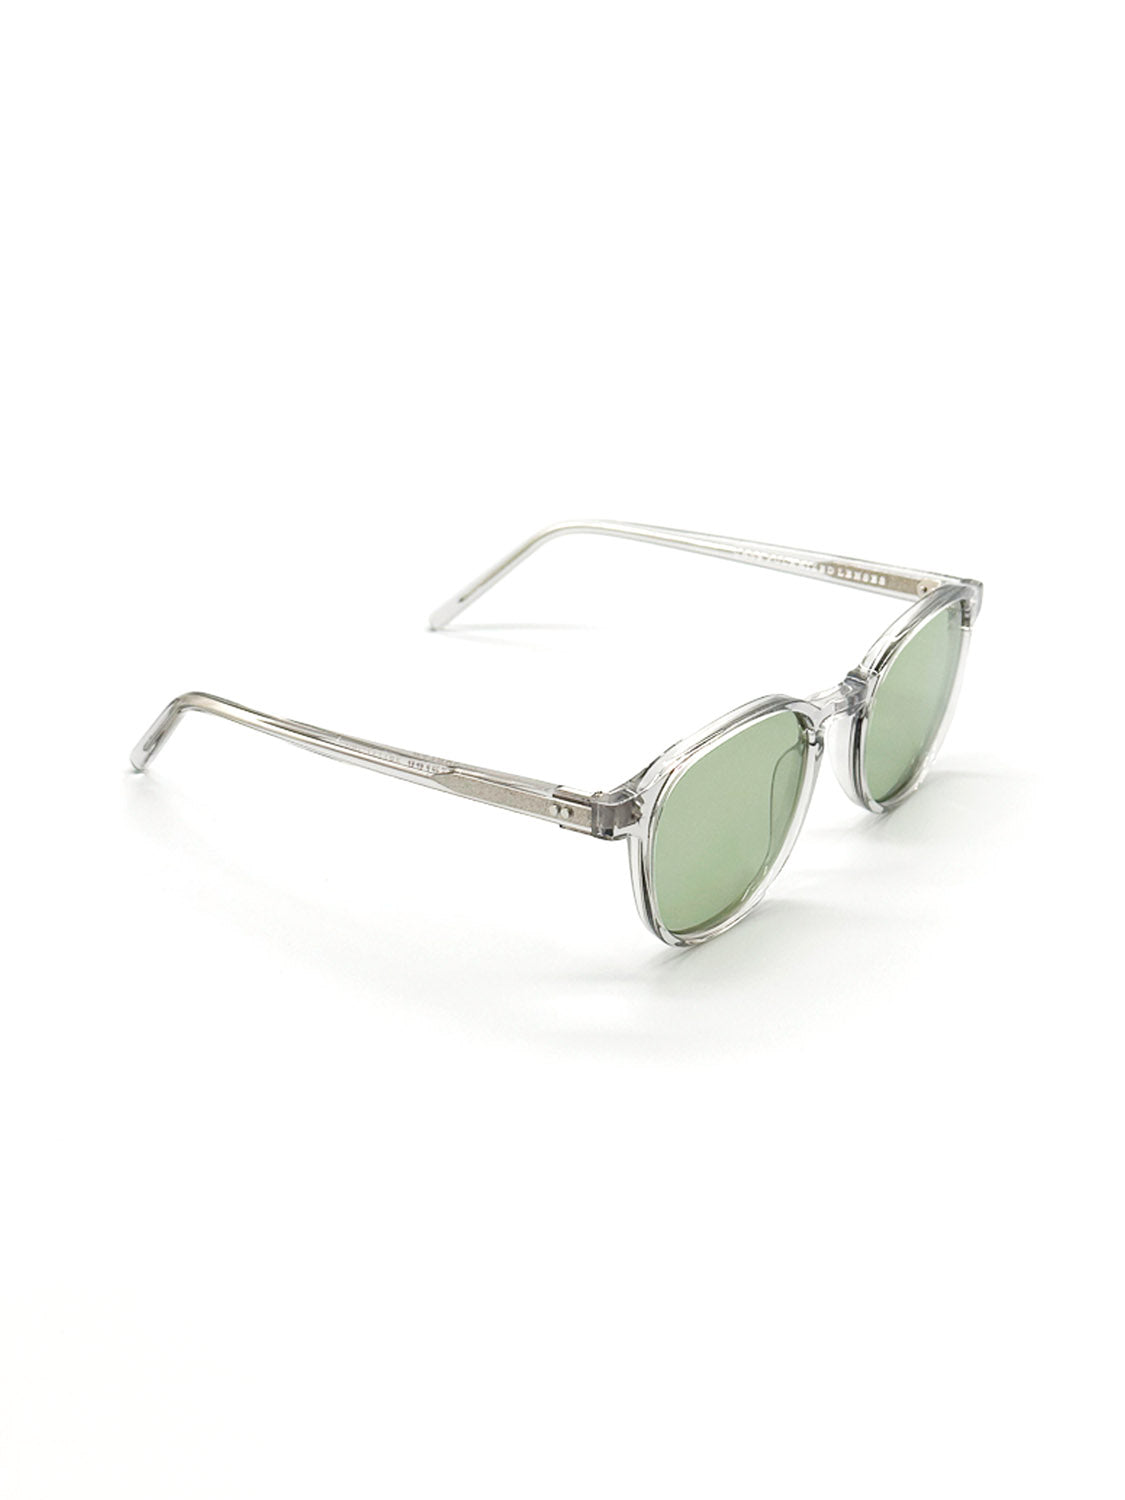 A144C3LG Polarized Sunglasses